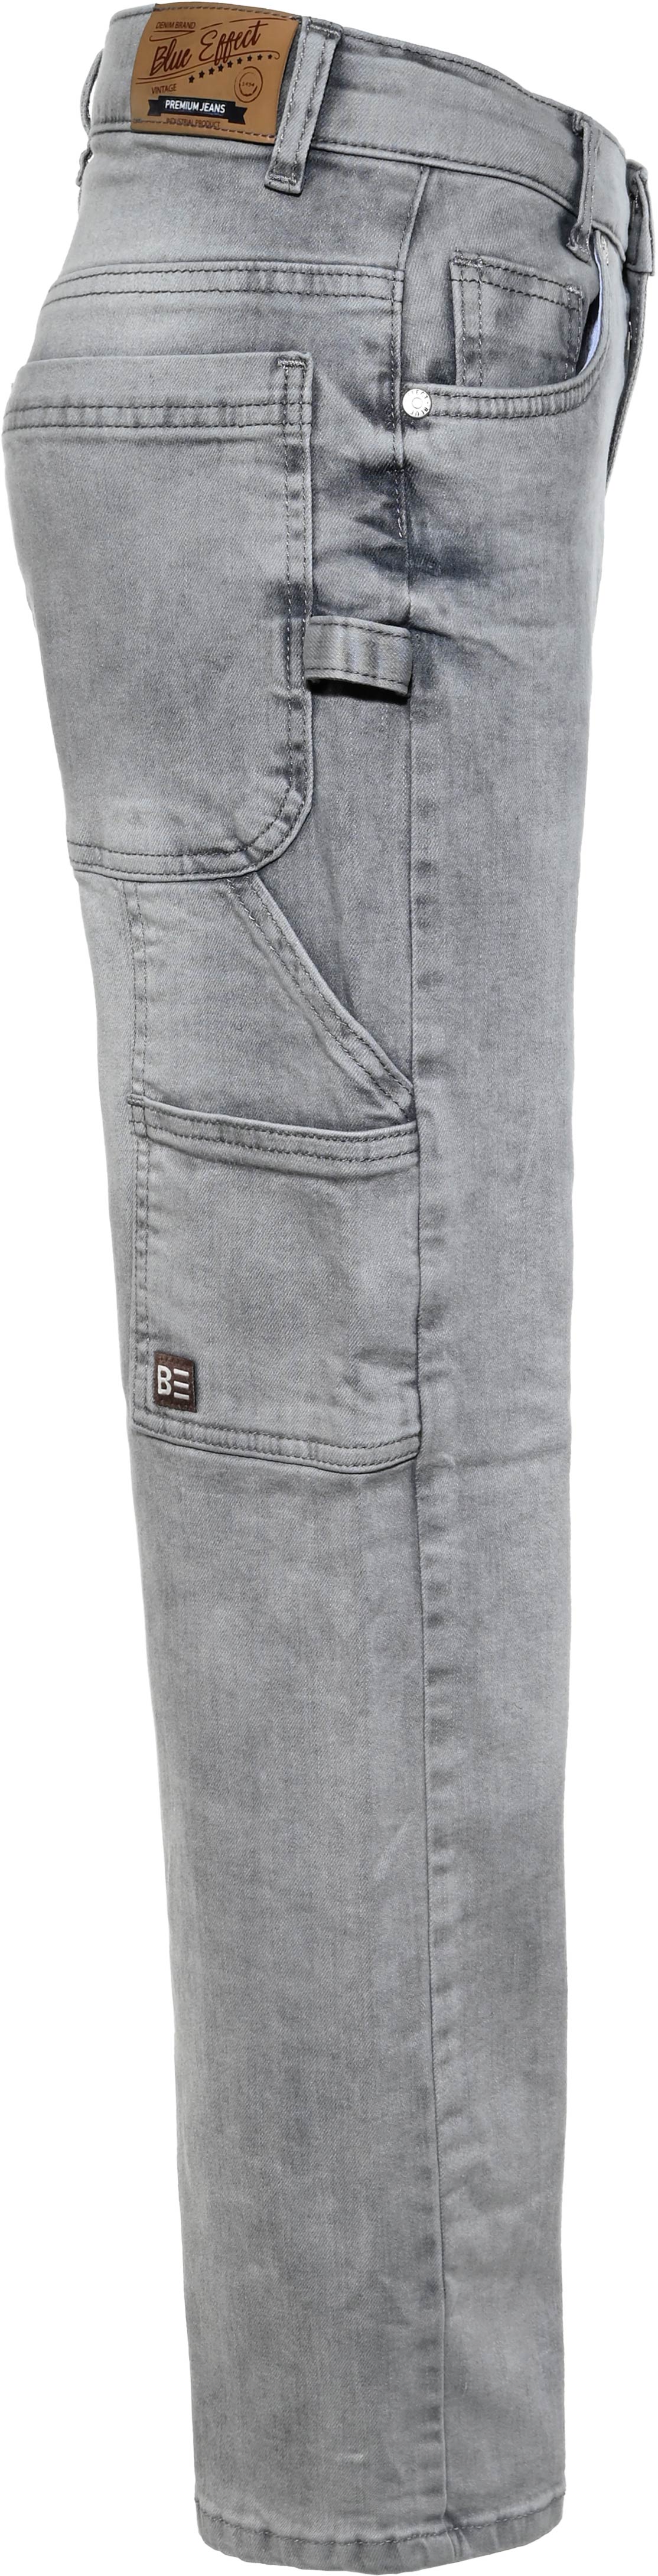 2856-Boys Baggy Jeans Workerstyle, verfügbar in Slim, Normal